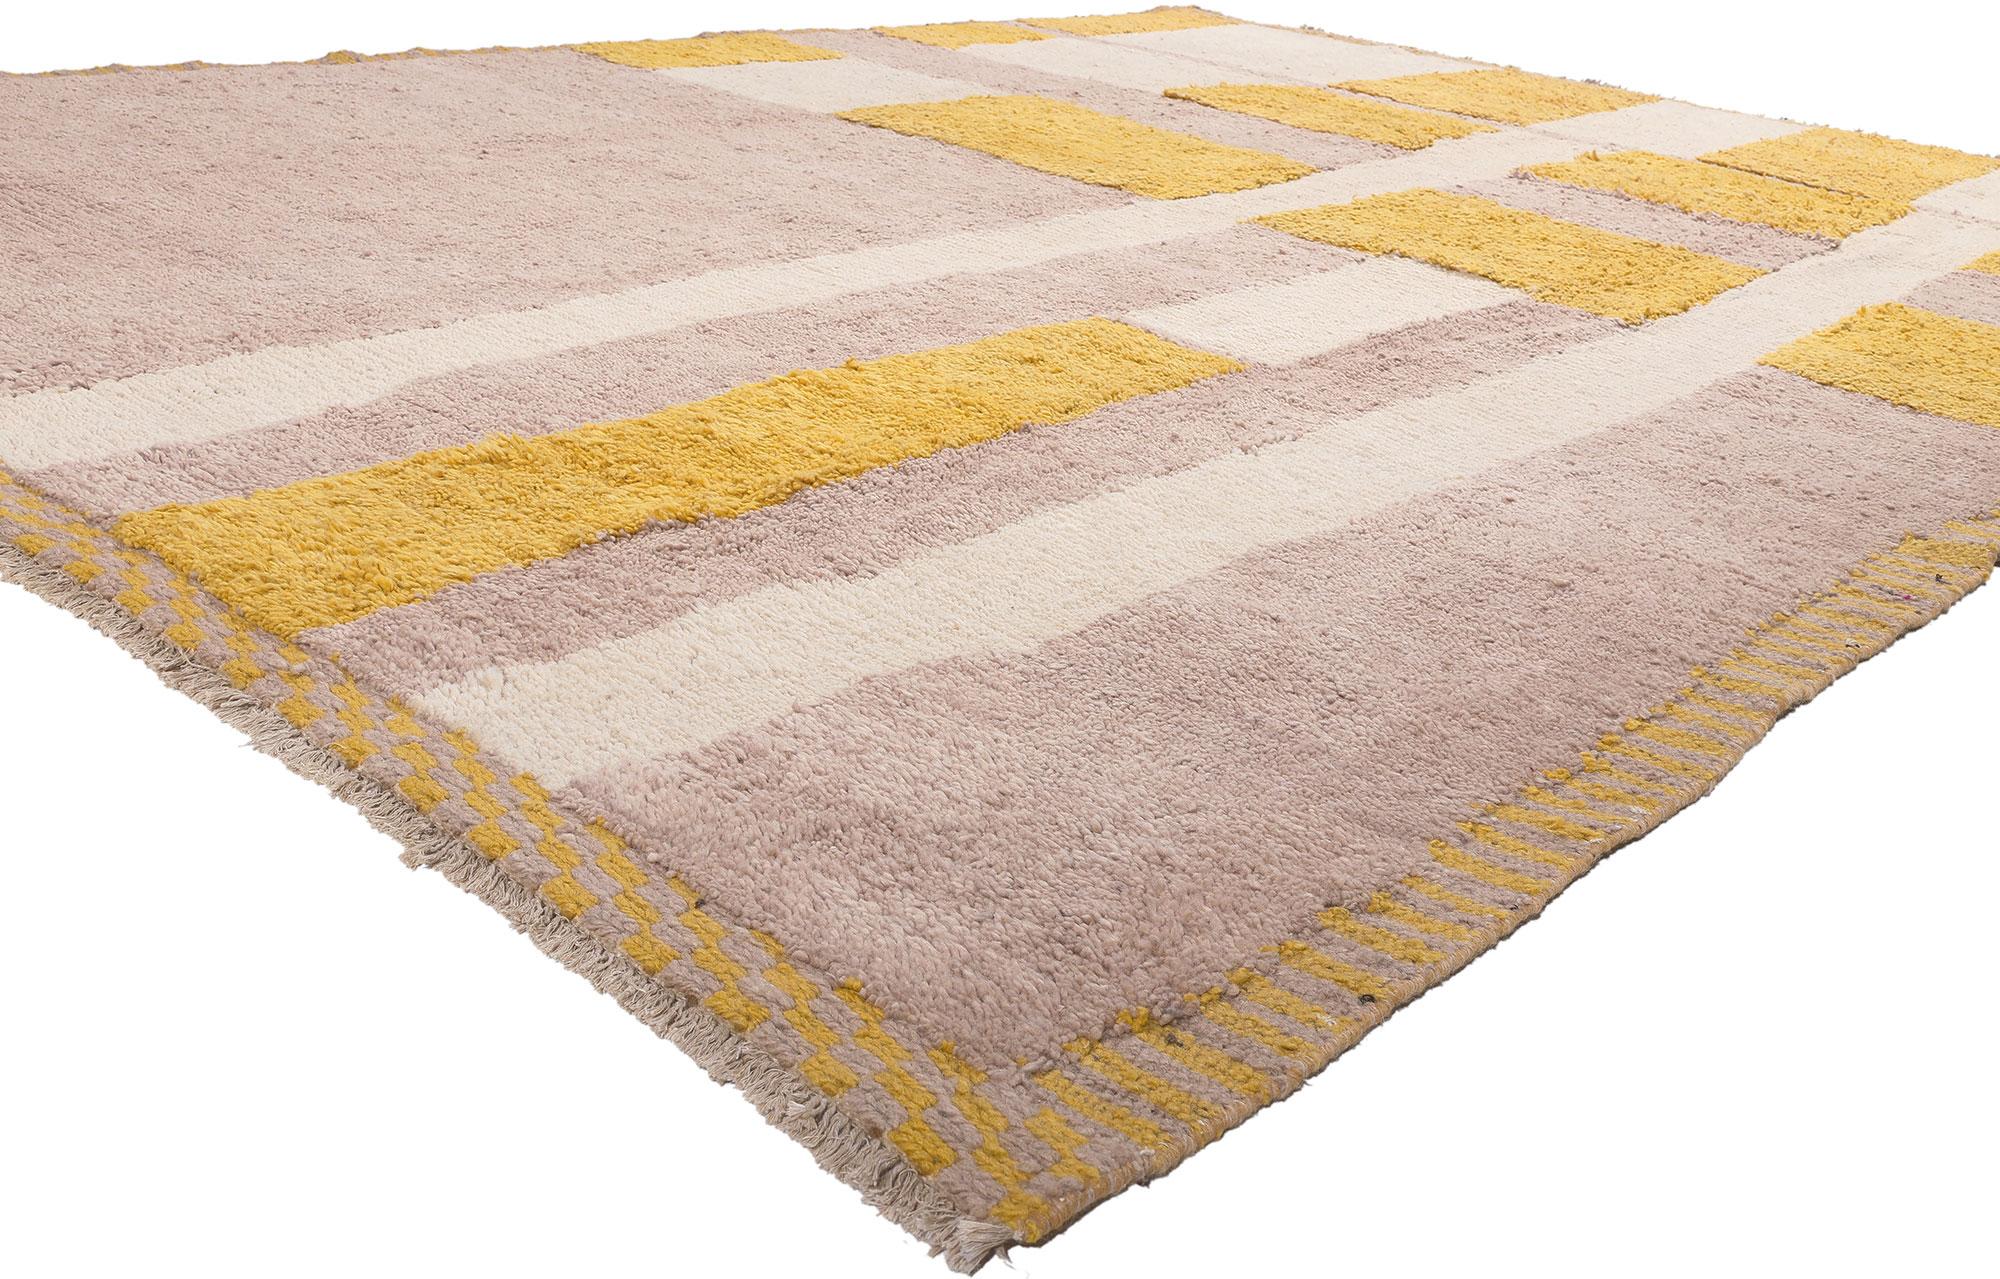 81014 Tapis marocain moderne Color Block, 08'11 x 11'10. Reflétant des éléments de l'expressionnisme abstrait avec des détails et une texture incroyables, ce tapis marocain moderne est une vision captivante de la beauté du tissage. Le motif color